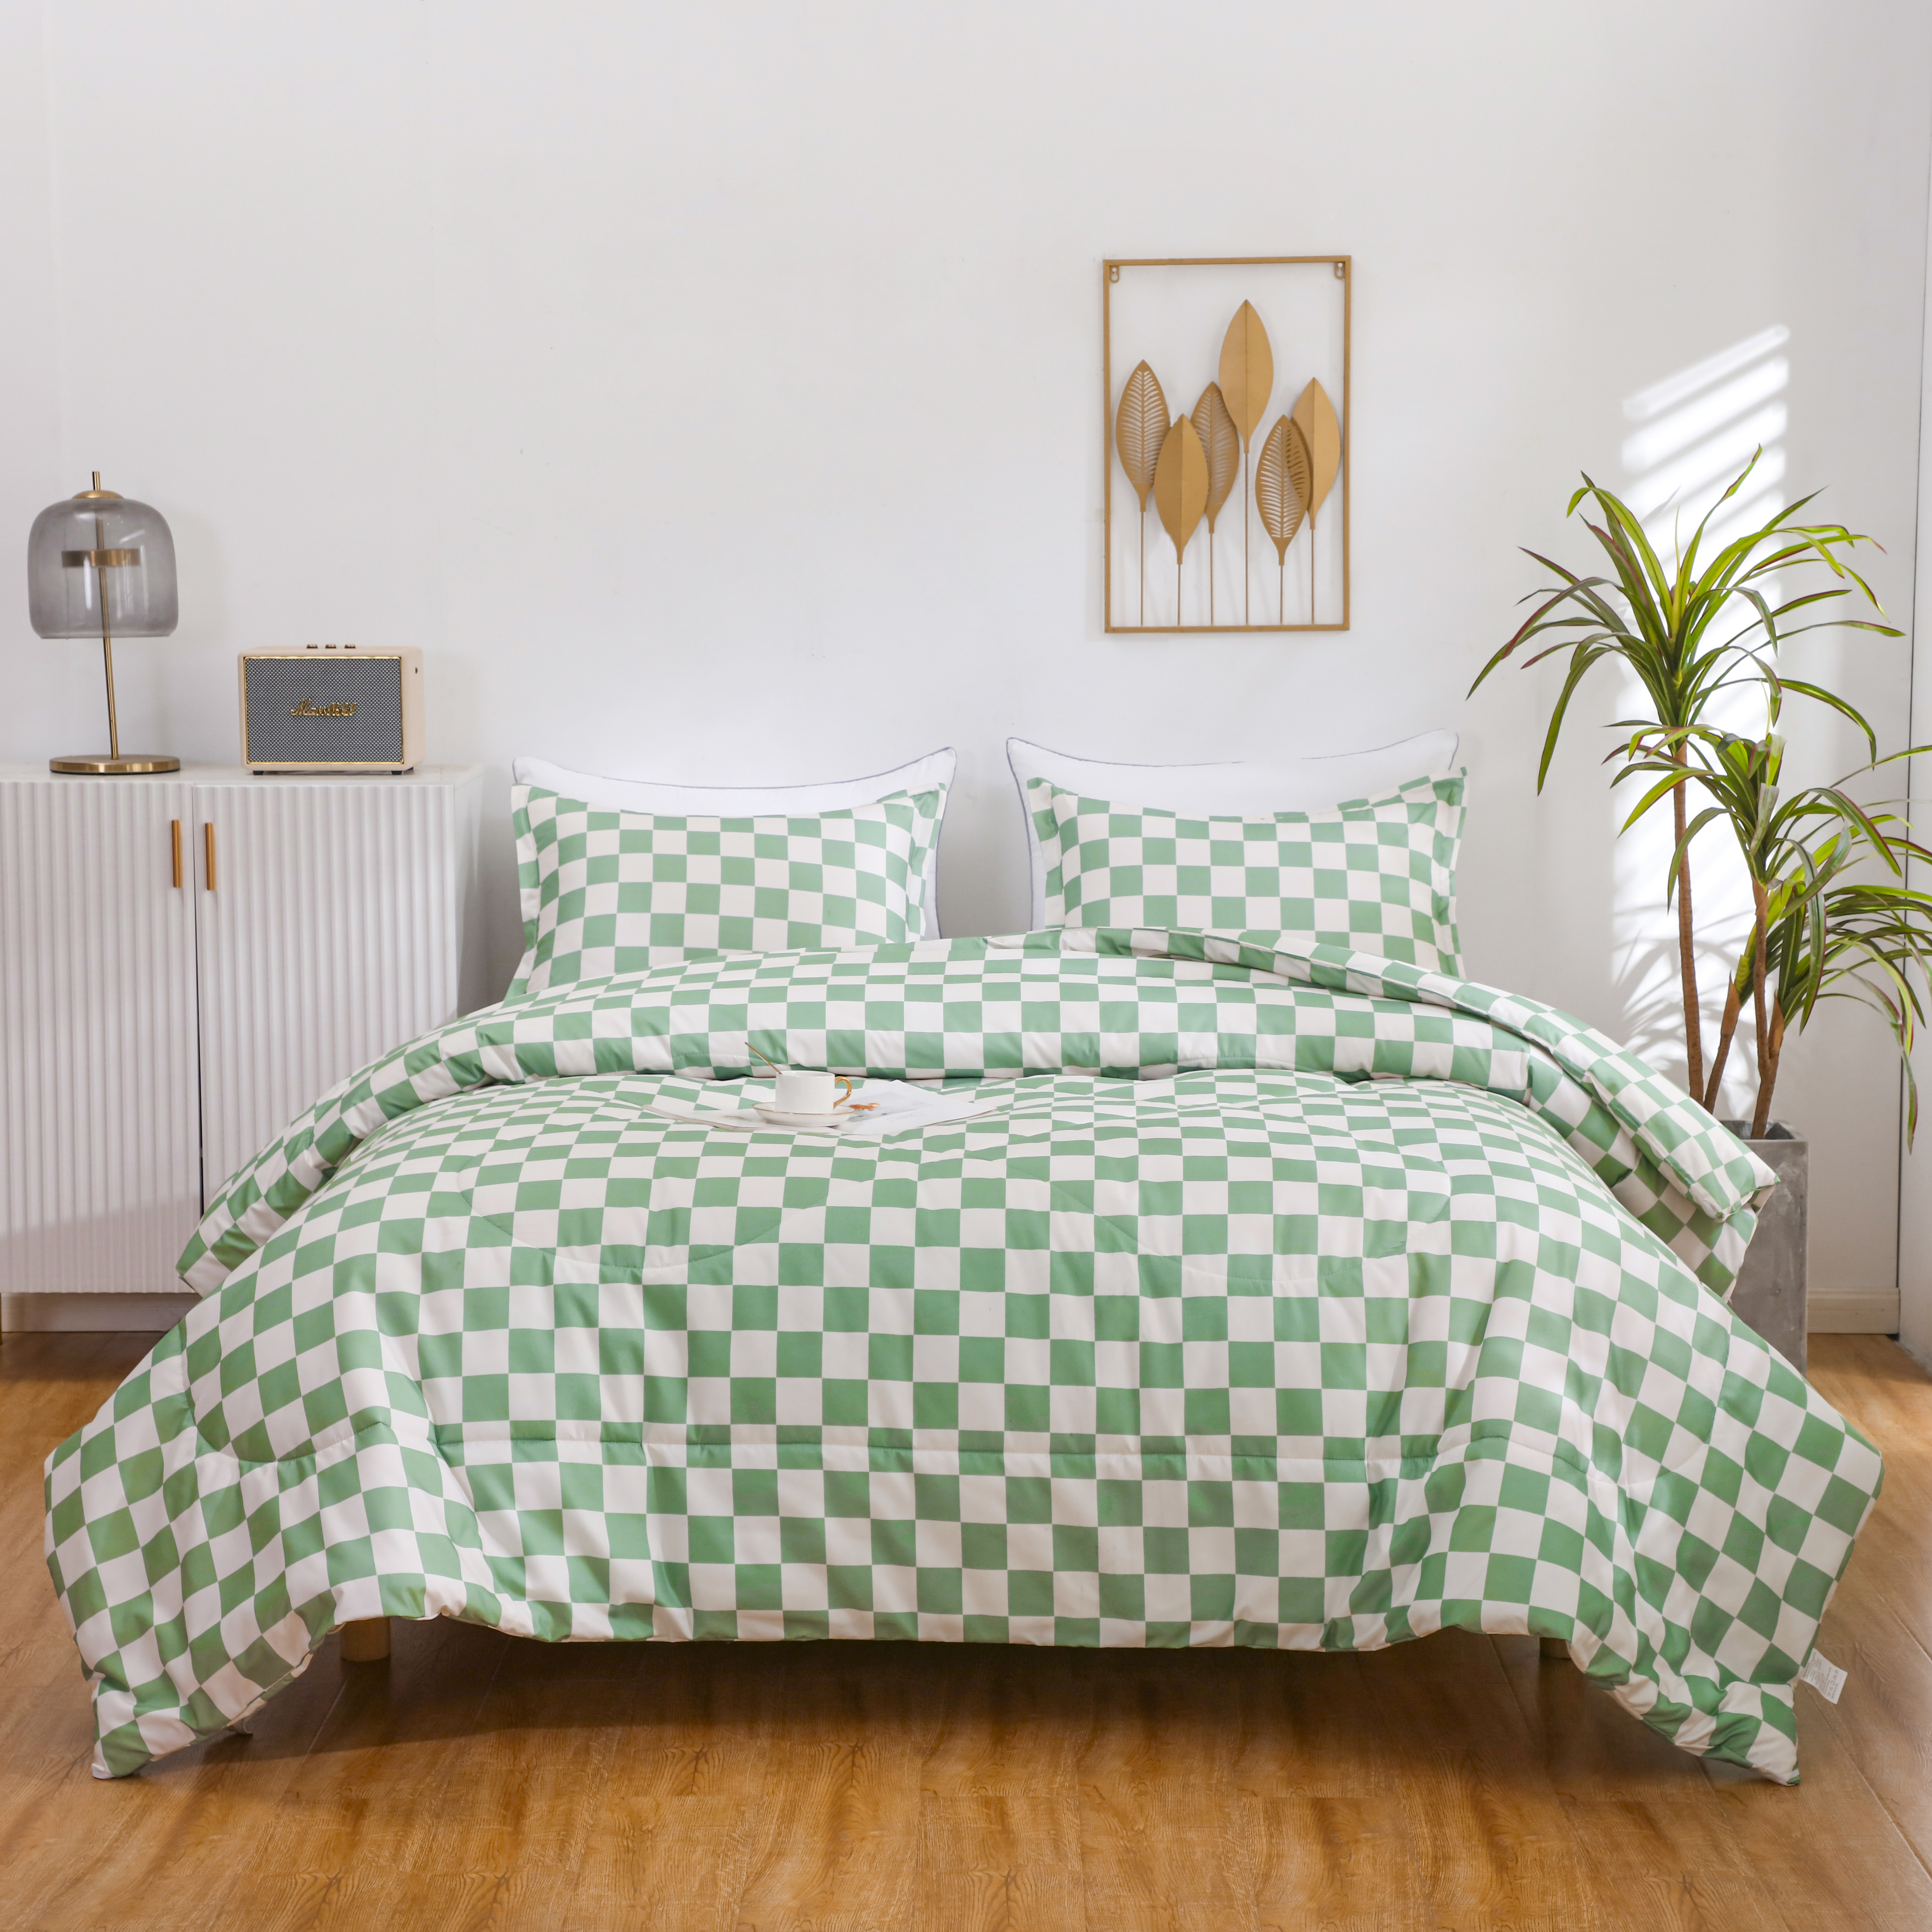 LUCKYBULL Full Comforter Հավաքածու 3 կտորից Fluffy Անկողնային Հավաքածու Sage Green Checkerboard Grid Down Alternative Comforter, վանդակավոր վանդակավոր փափուկ մխիթարիչ 2 բարձի երեսներով ամբողջ սեզոնին, Կանաչ բեժ